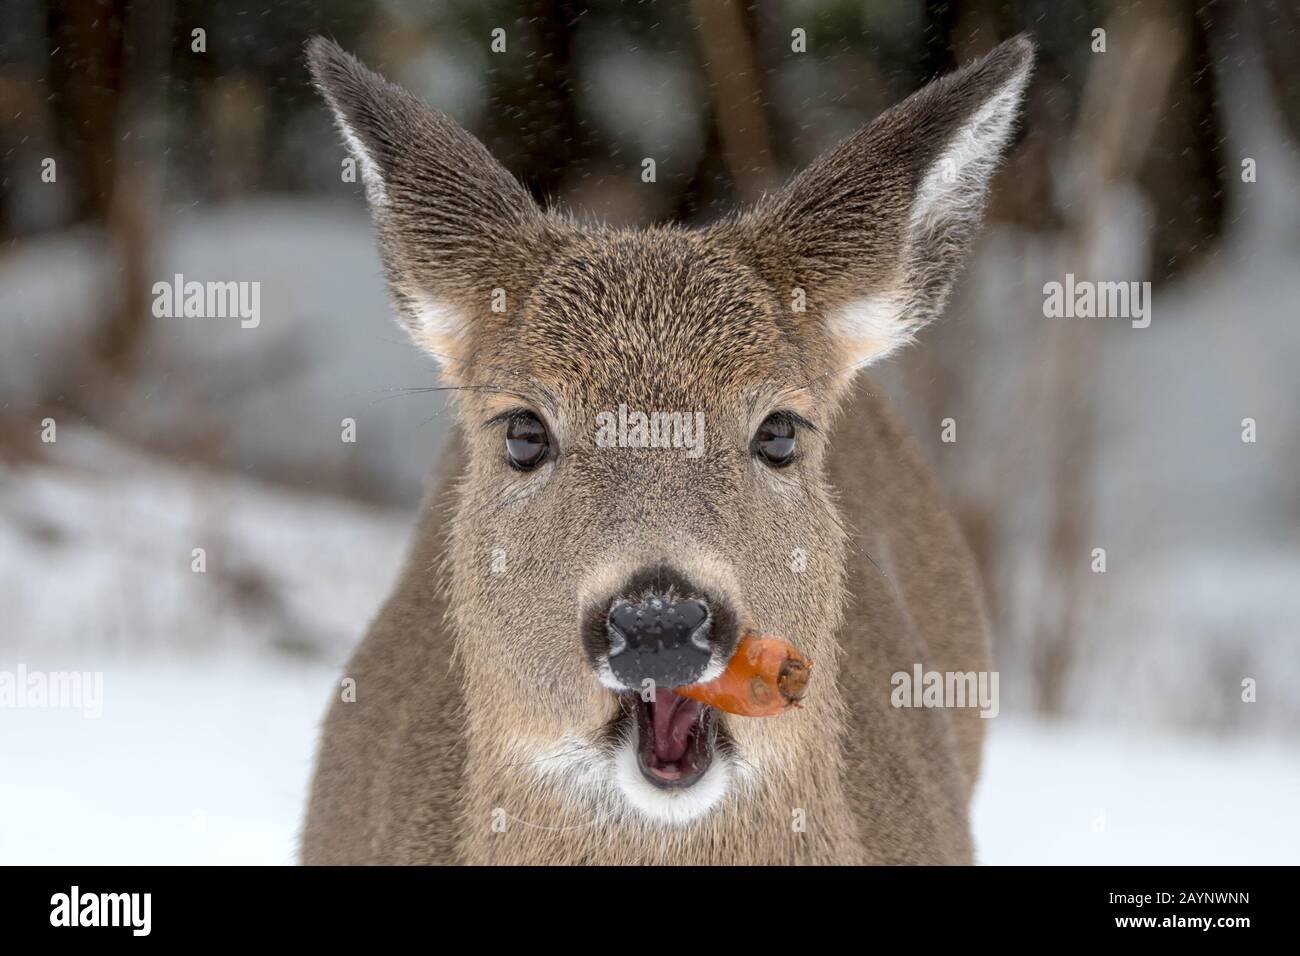 Un seul cerf de Virginie mâchant une carotte. Vue détaillée de son visage. Il neige, cela peut être vu au-dessus d'elle. L'accent est mis sur ses yeux. Banque D'Images